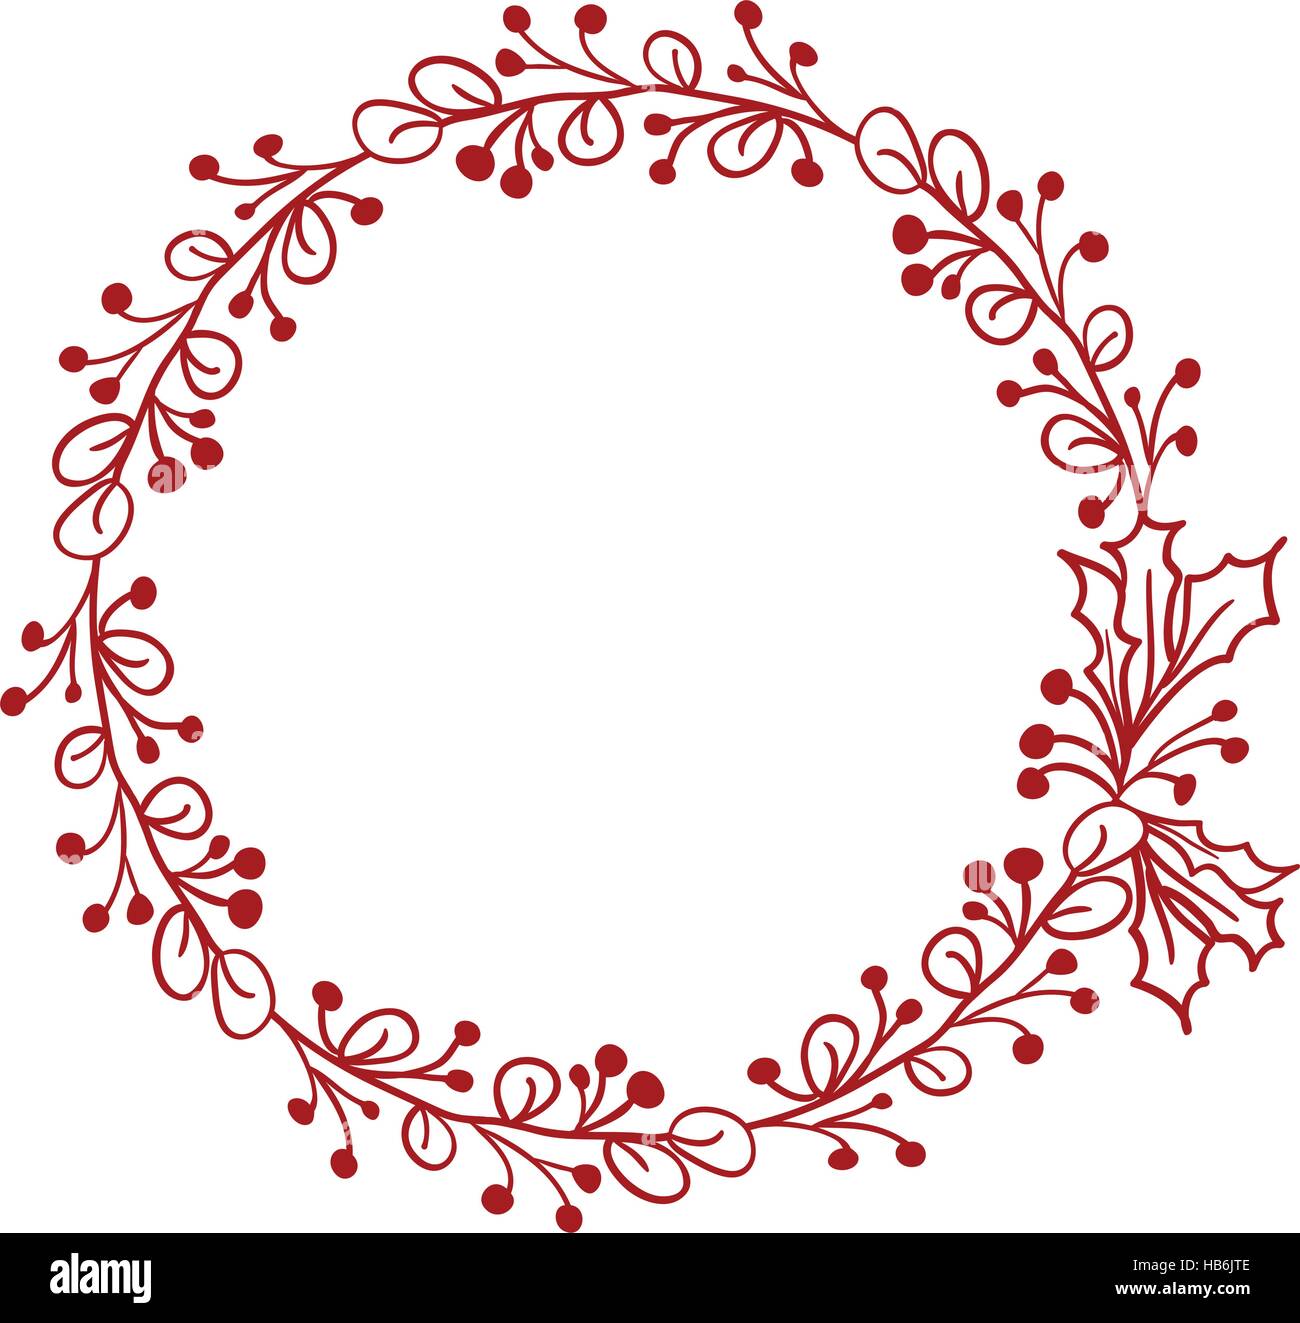 Red cornice rotonda di foglie isolati su sfondo bianco. Illustrazione vettoriale EPS10 Illustrazione Vettoriale